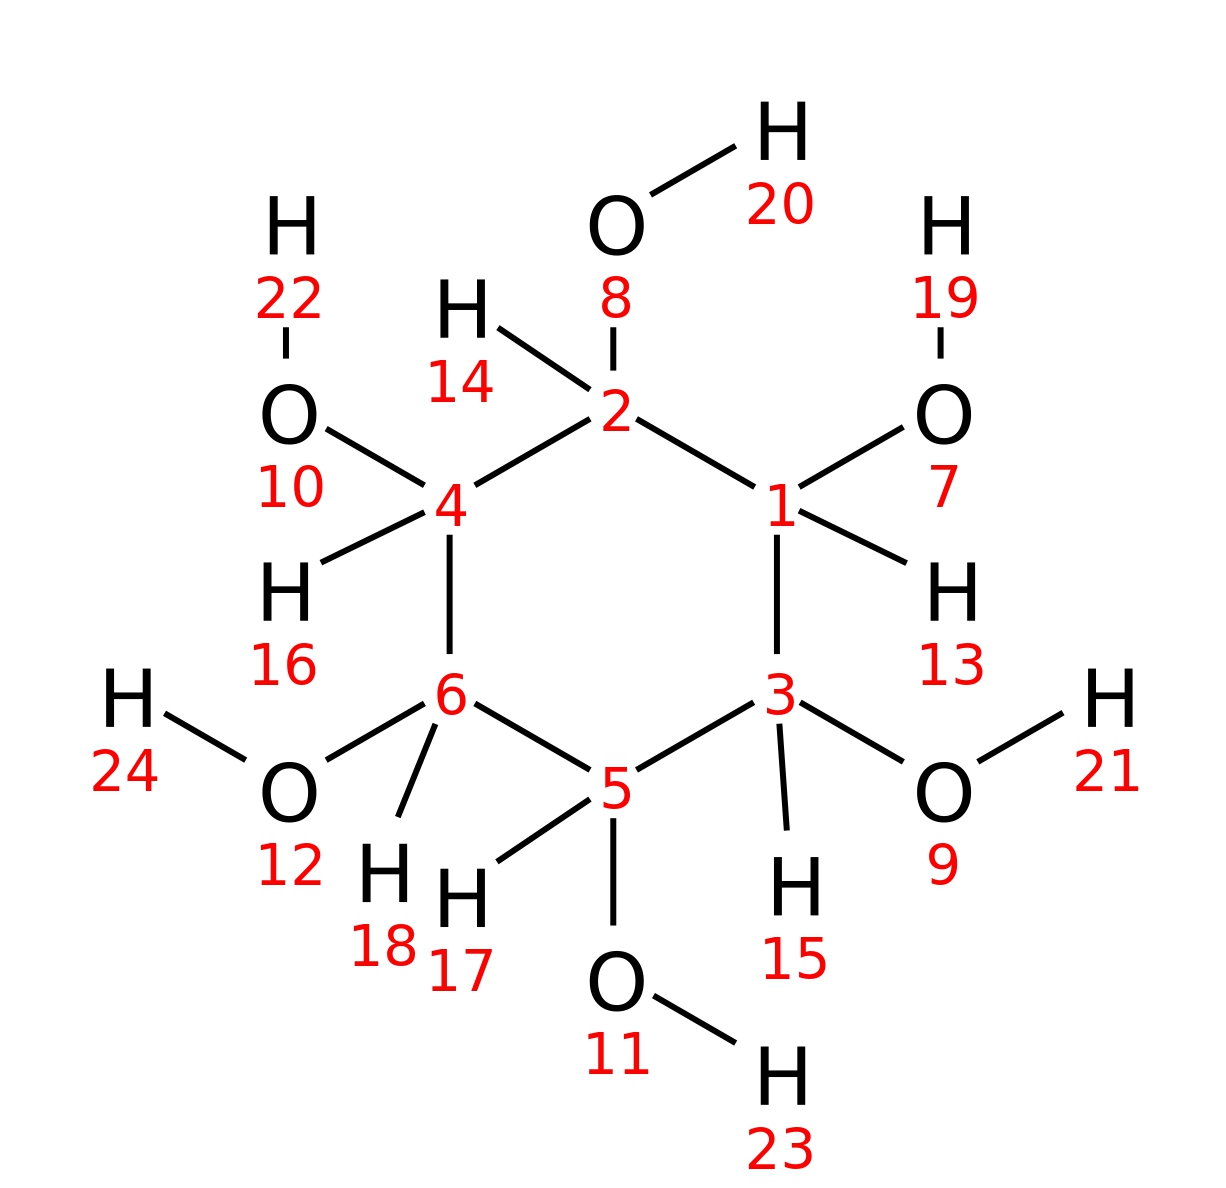 InChI=1S/C6H12O6/c7-1-2(8)4(10)6(12)5(11)3(1)9/h1-12H